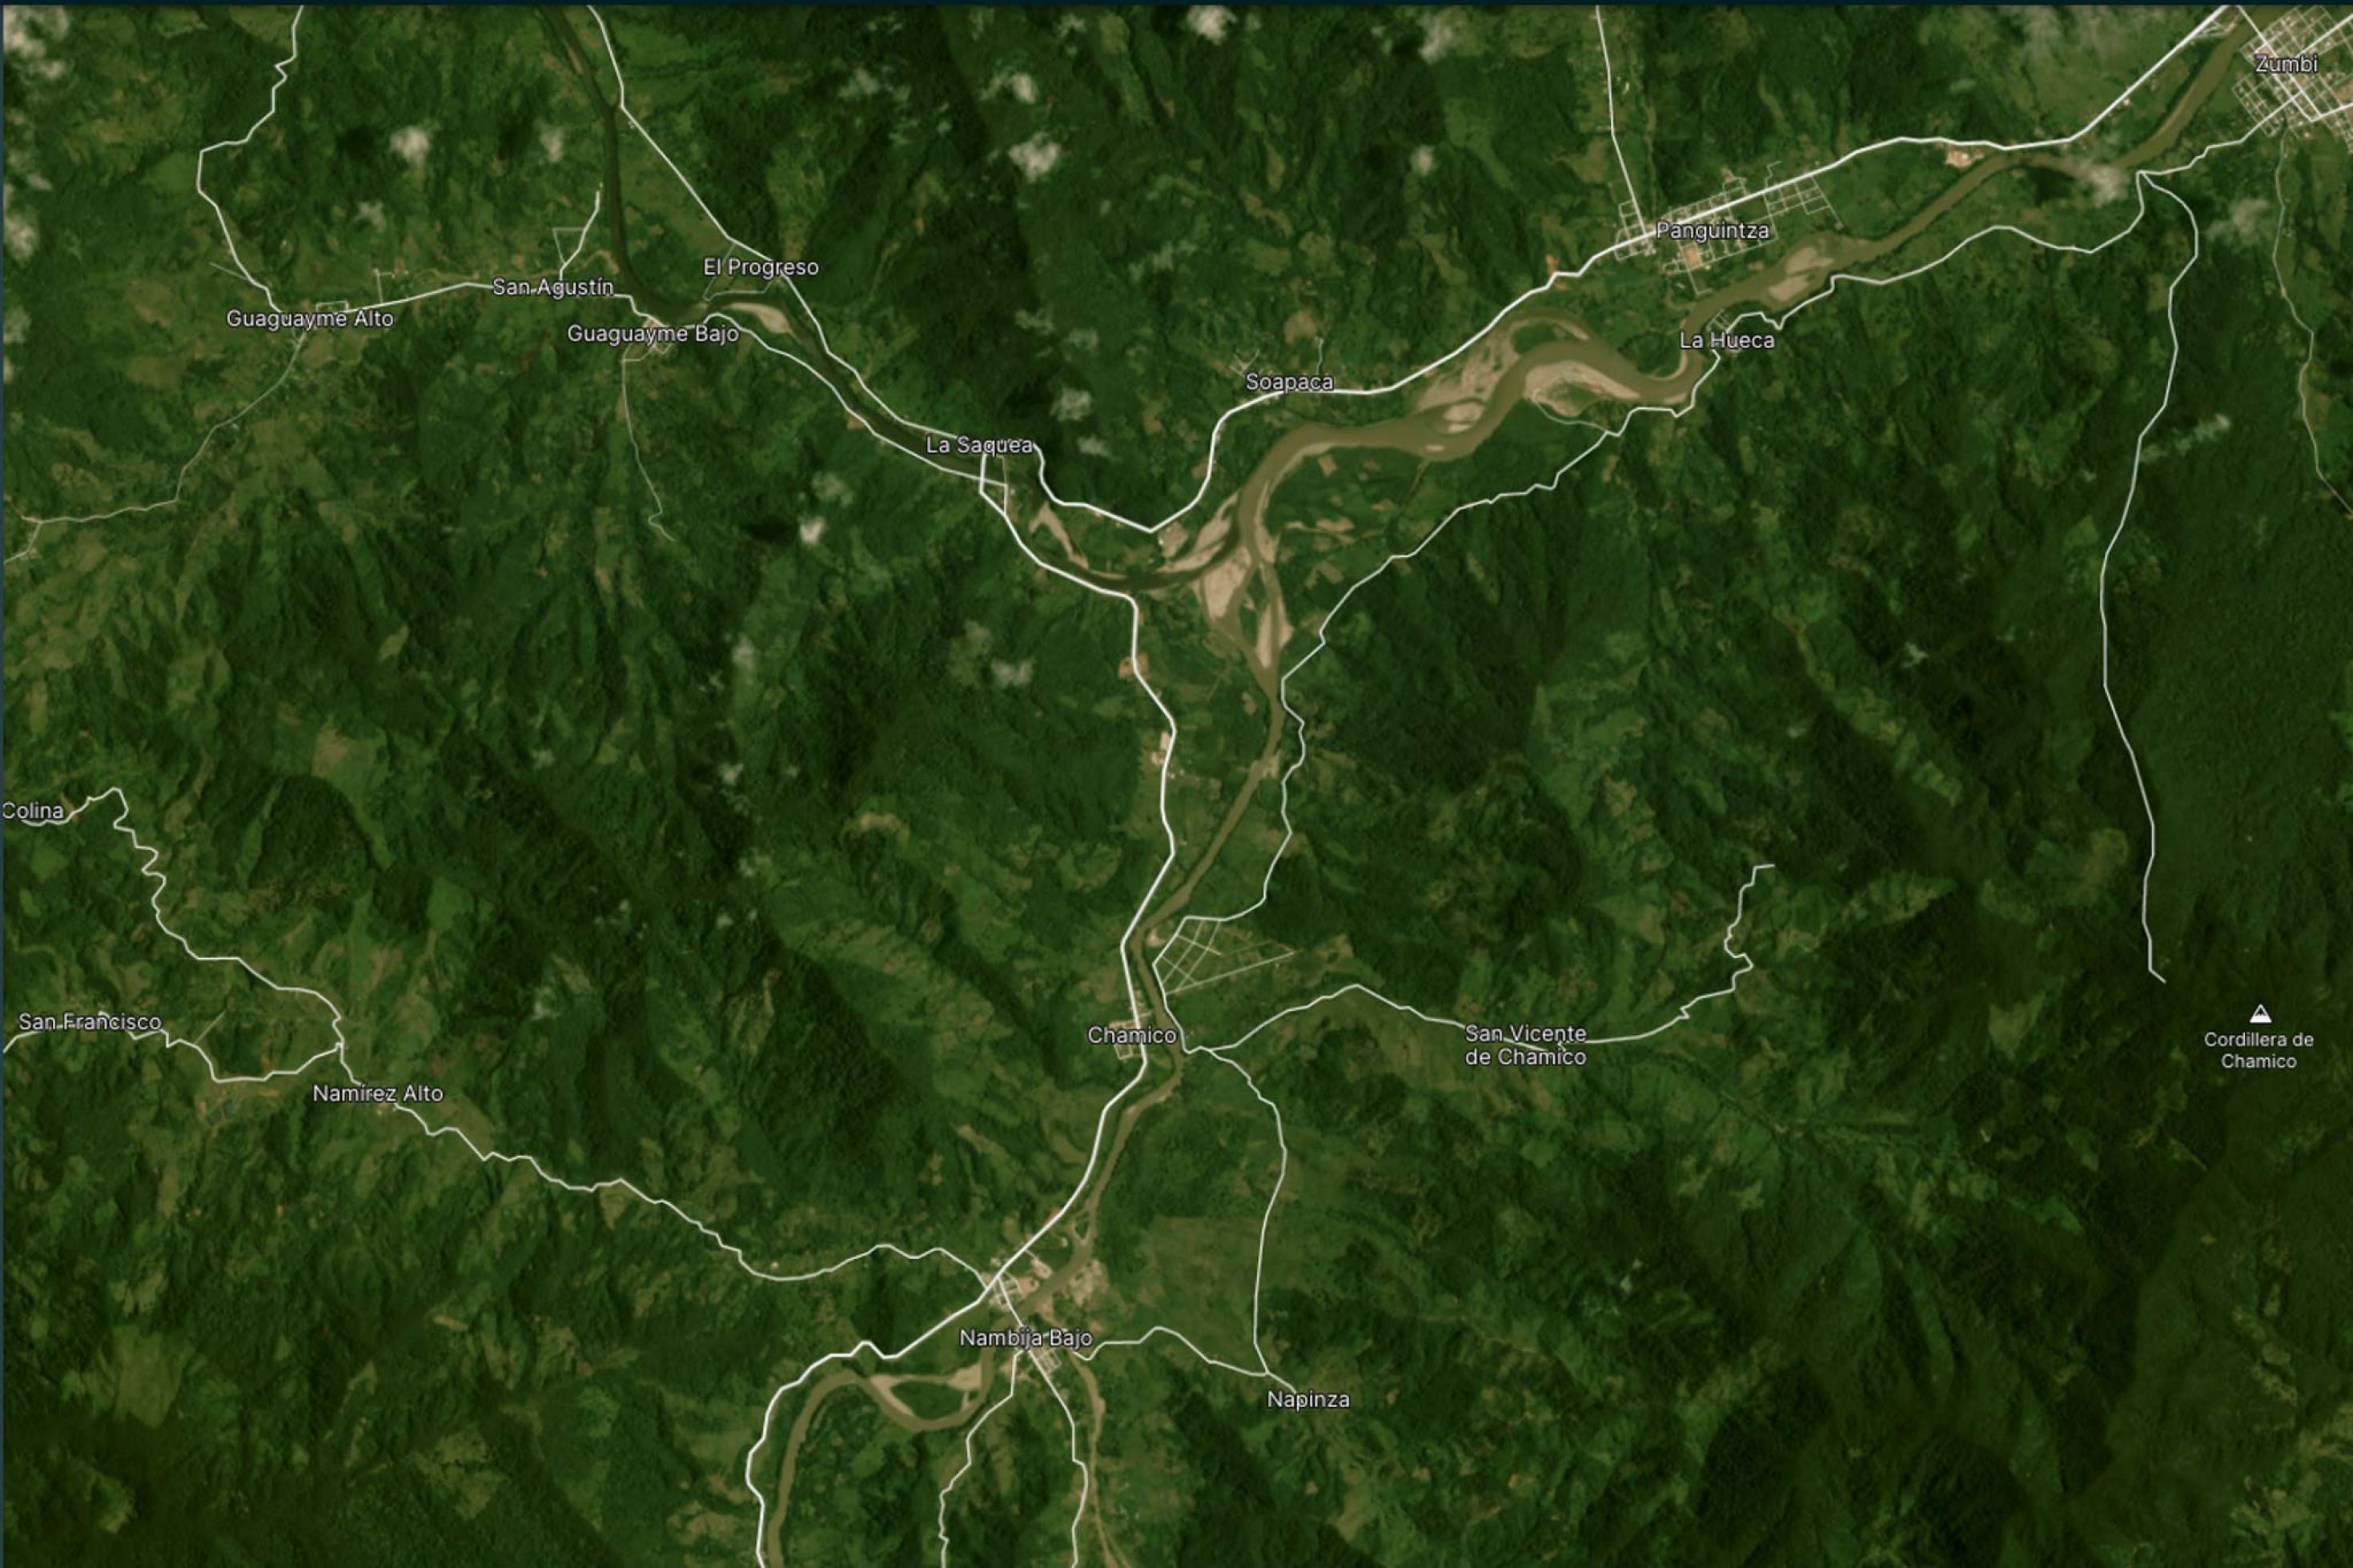 Satellitenbild des Rio Zamora bei Panguintza/Ecuador aus 2016. Erkenbar sind einige kleinere Minenaktivitäten entlang des Flusses.